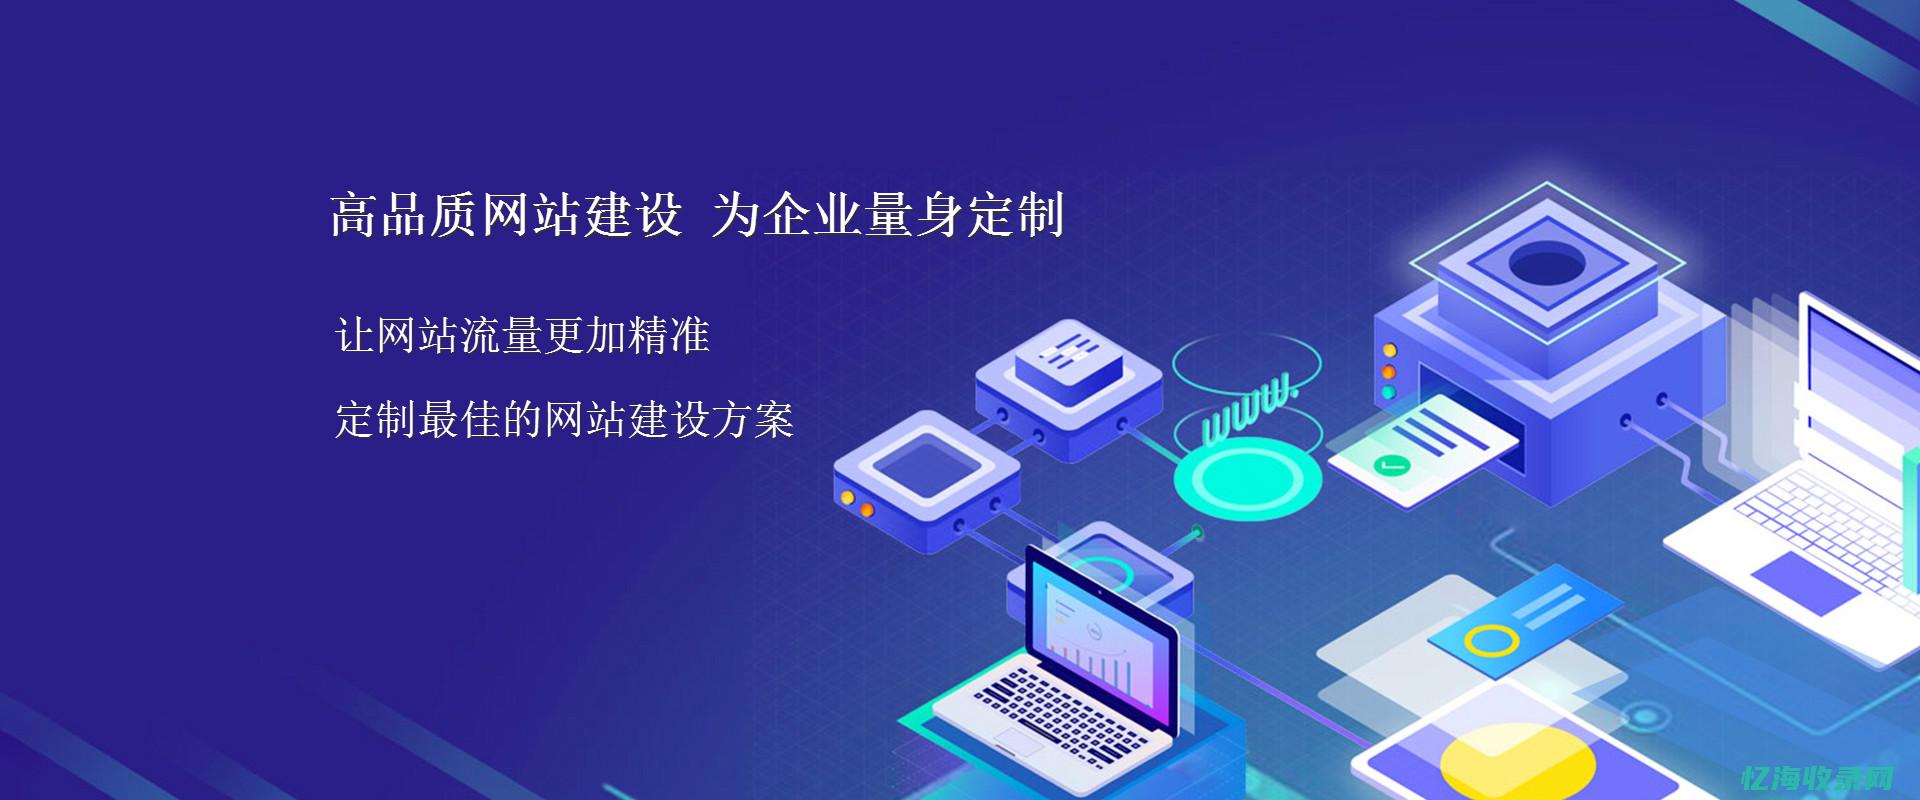 深圳网络营销课程培训